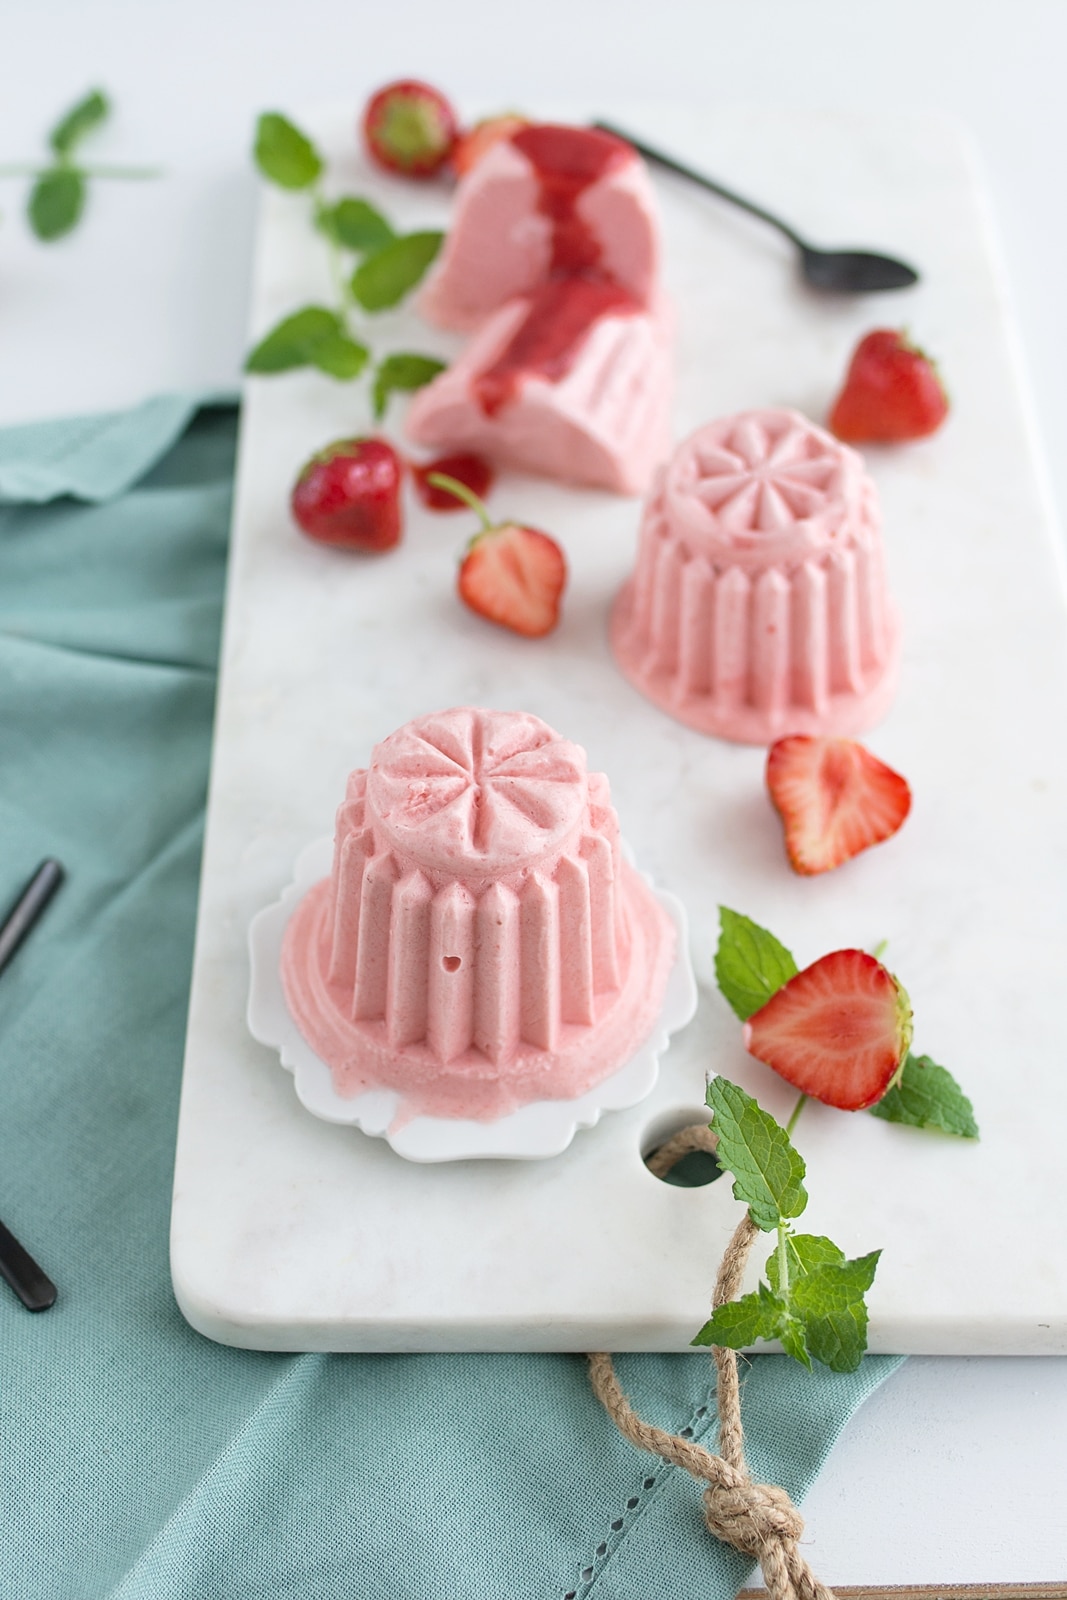 Zum Dahinschmelzen: Einfaches Erdbeer-Joghurt-Parfait – ohne Ei ...